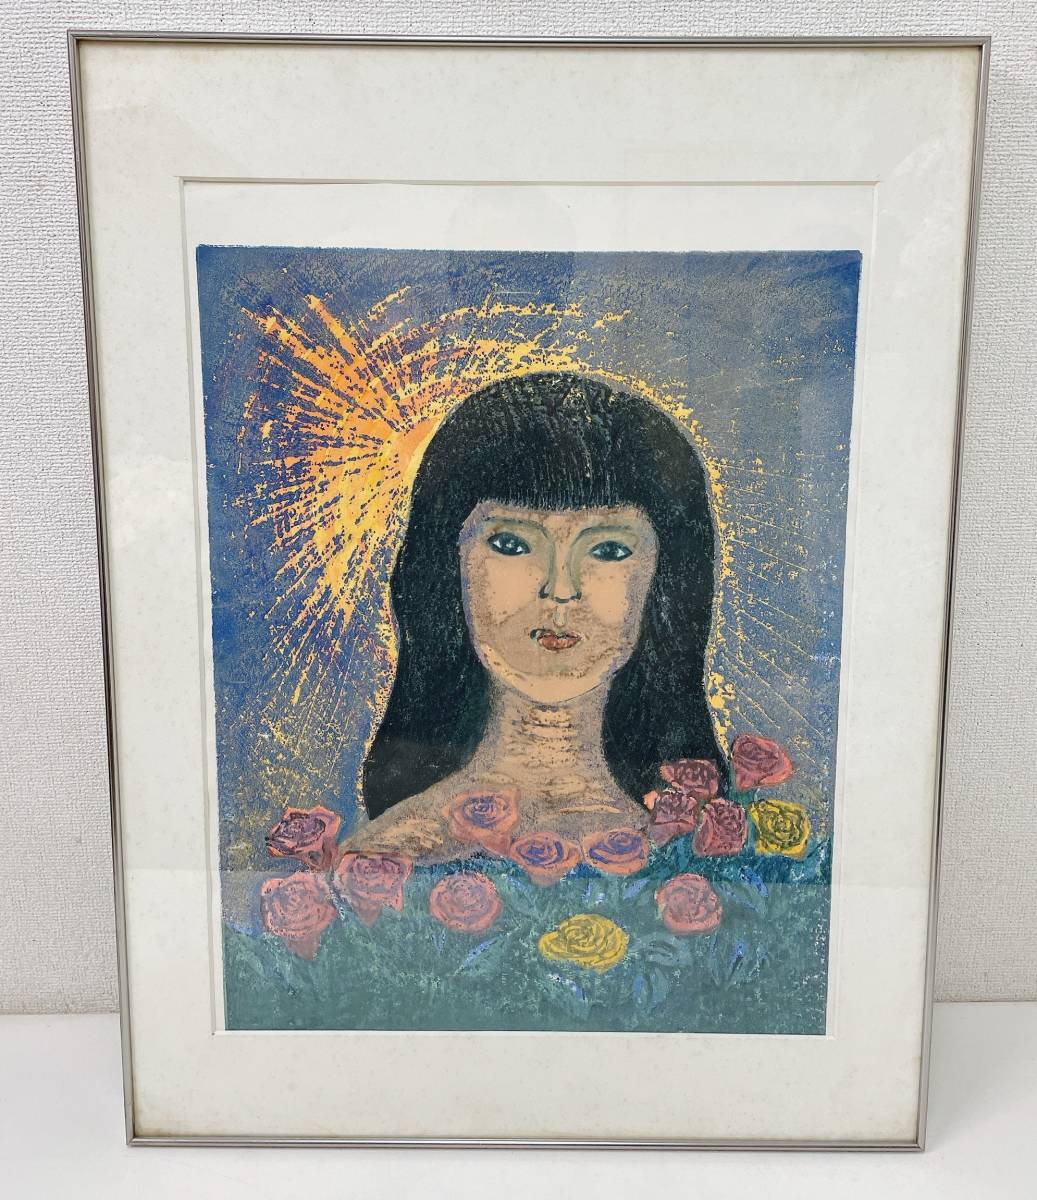 Oeuvre authentique [Encadrée 1983. AP Roses, Sun et Gil par F. Tanaka] Roses et filles/peinture/impression/rétro/intérieur/décoration/A55-058, Ouvrages d'art, Peinture, Portraits